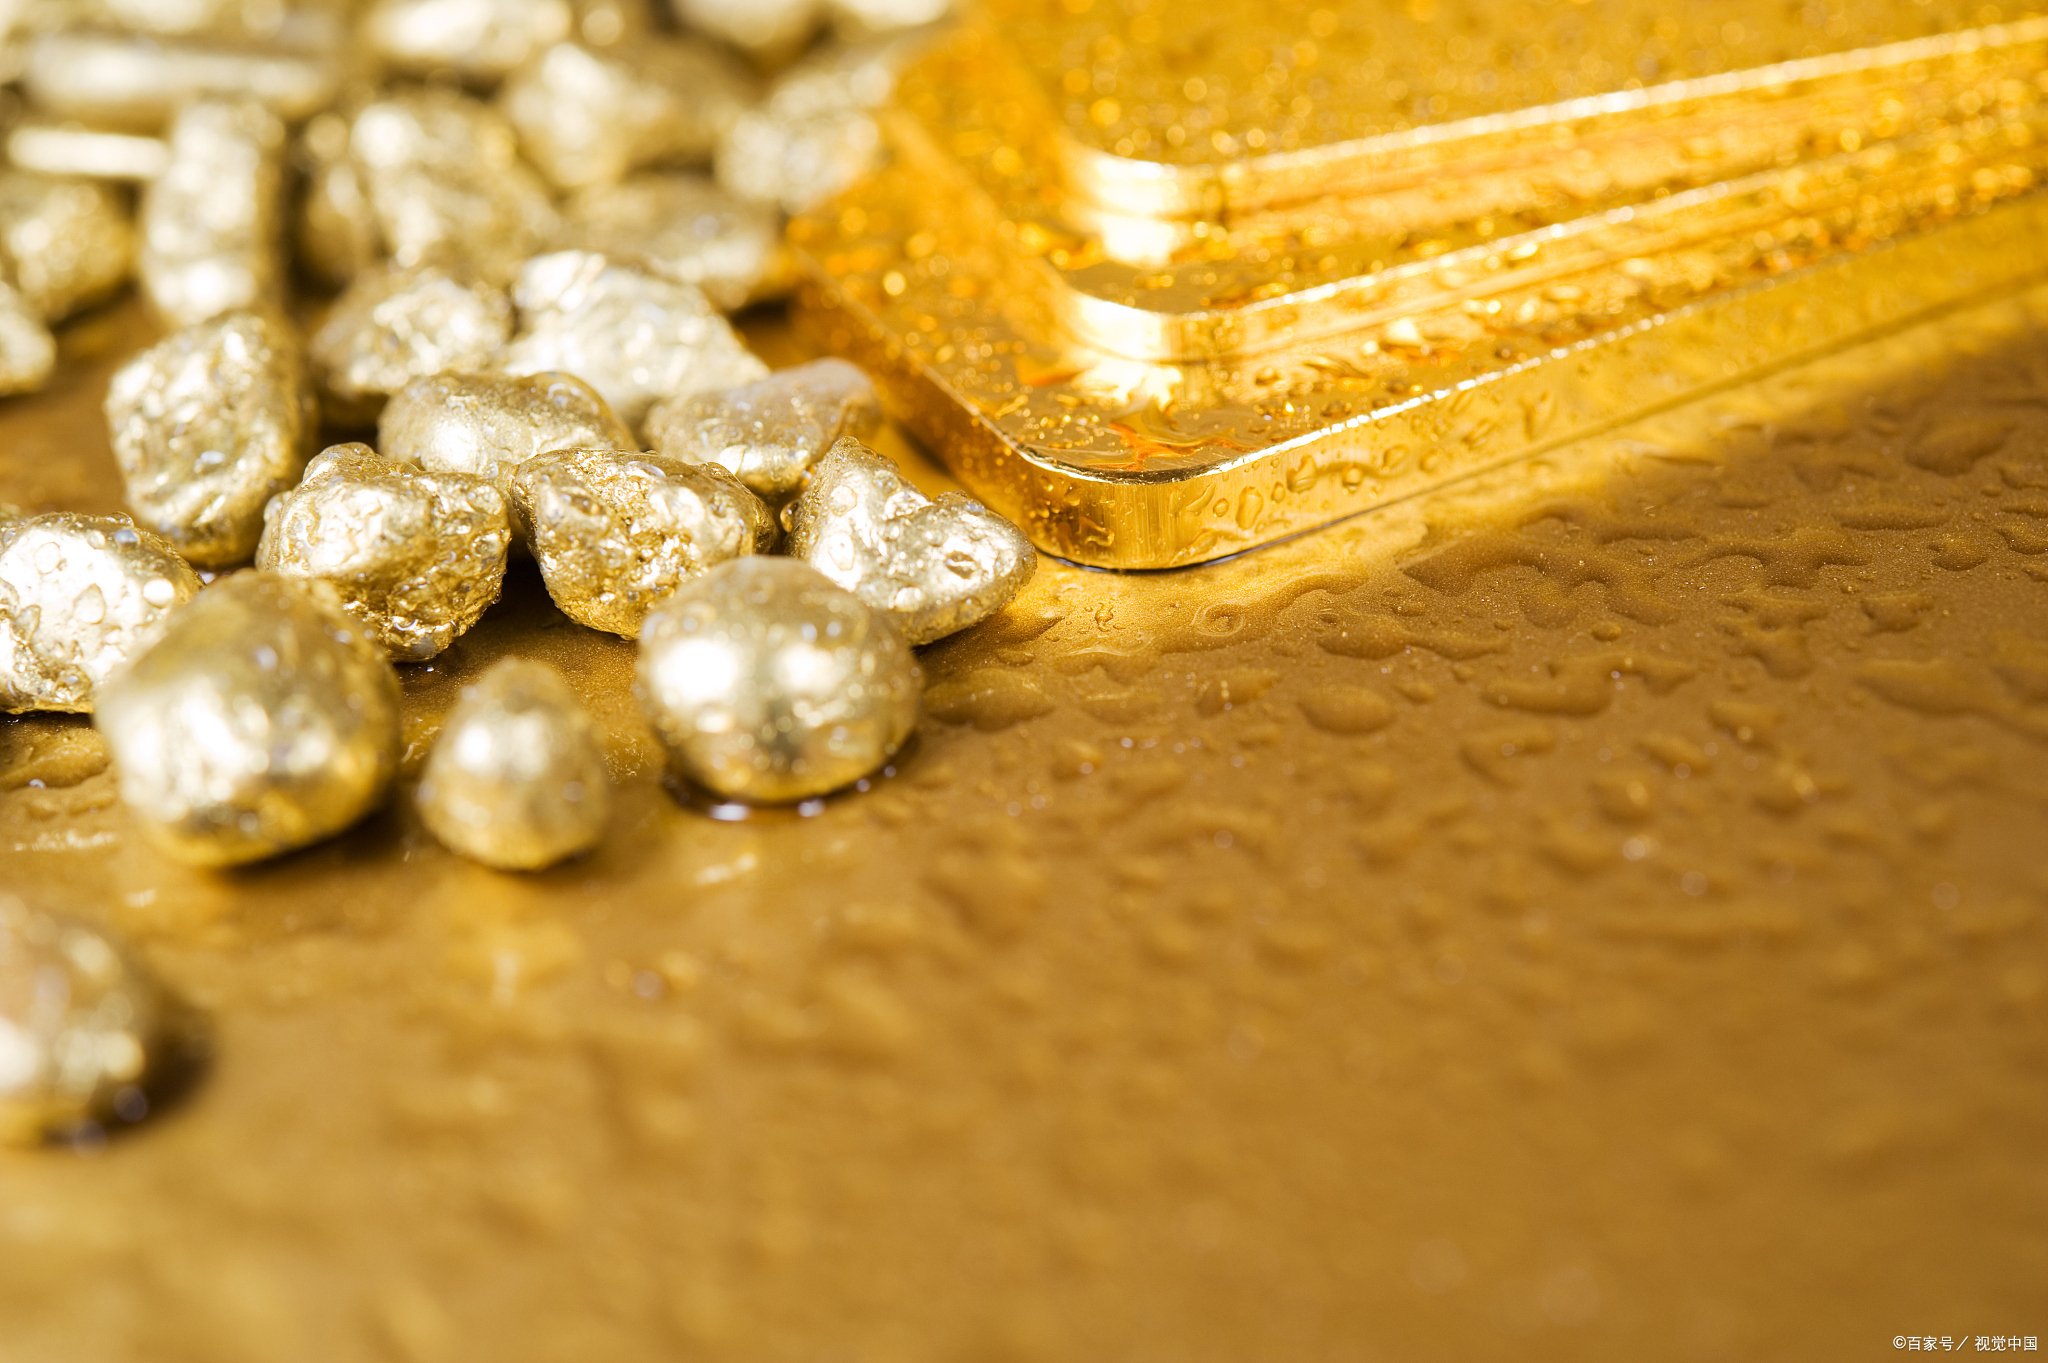 贵金属回收商谈黄金的化学性质